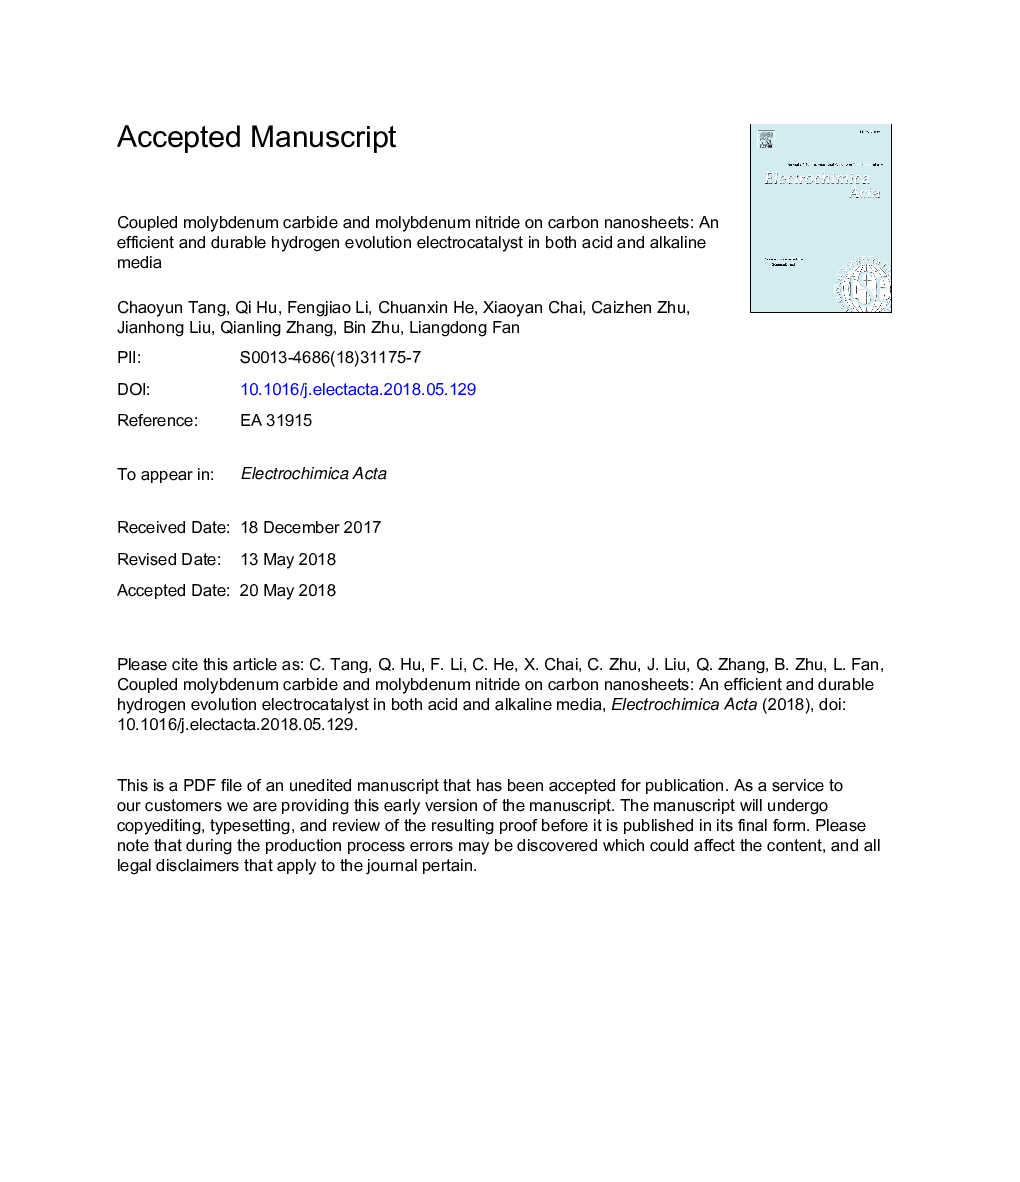 کاربید مولیبدن و نیترید همراه با نانو ذرات کربن: الکتروکاتالیست تکاملی هیدروژنی کارآمد و بادوام در هر دو مواد اسیدی و قلیایی 